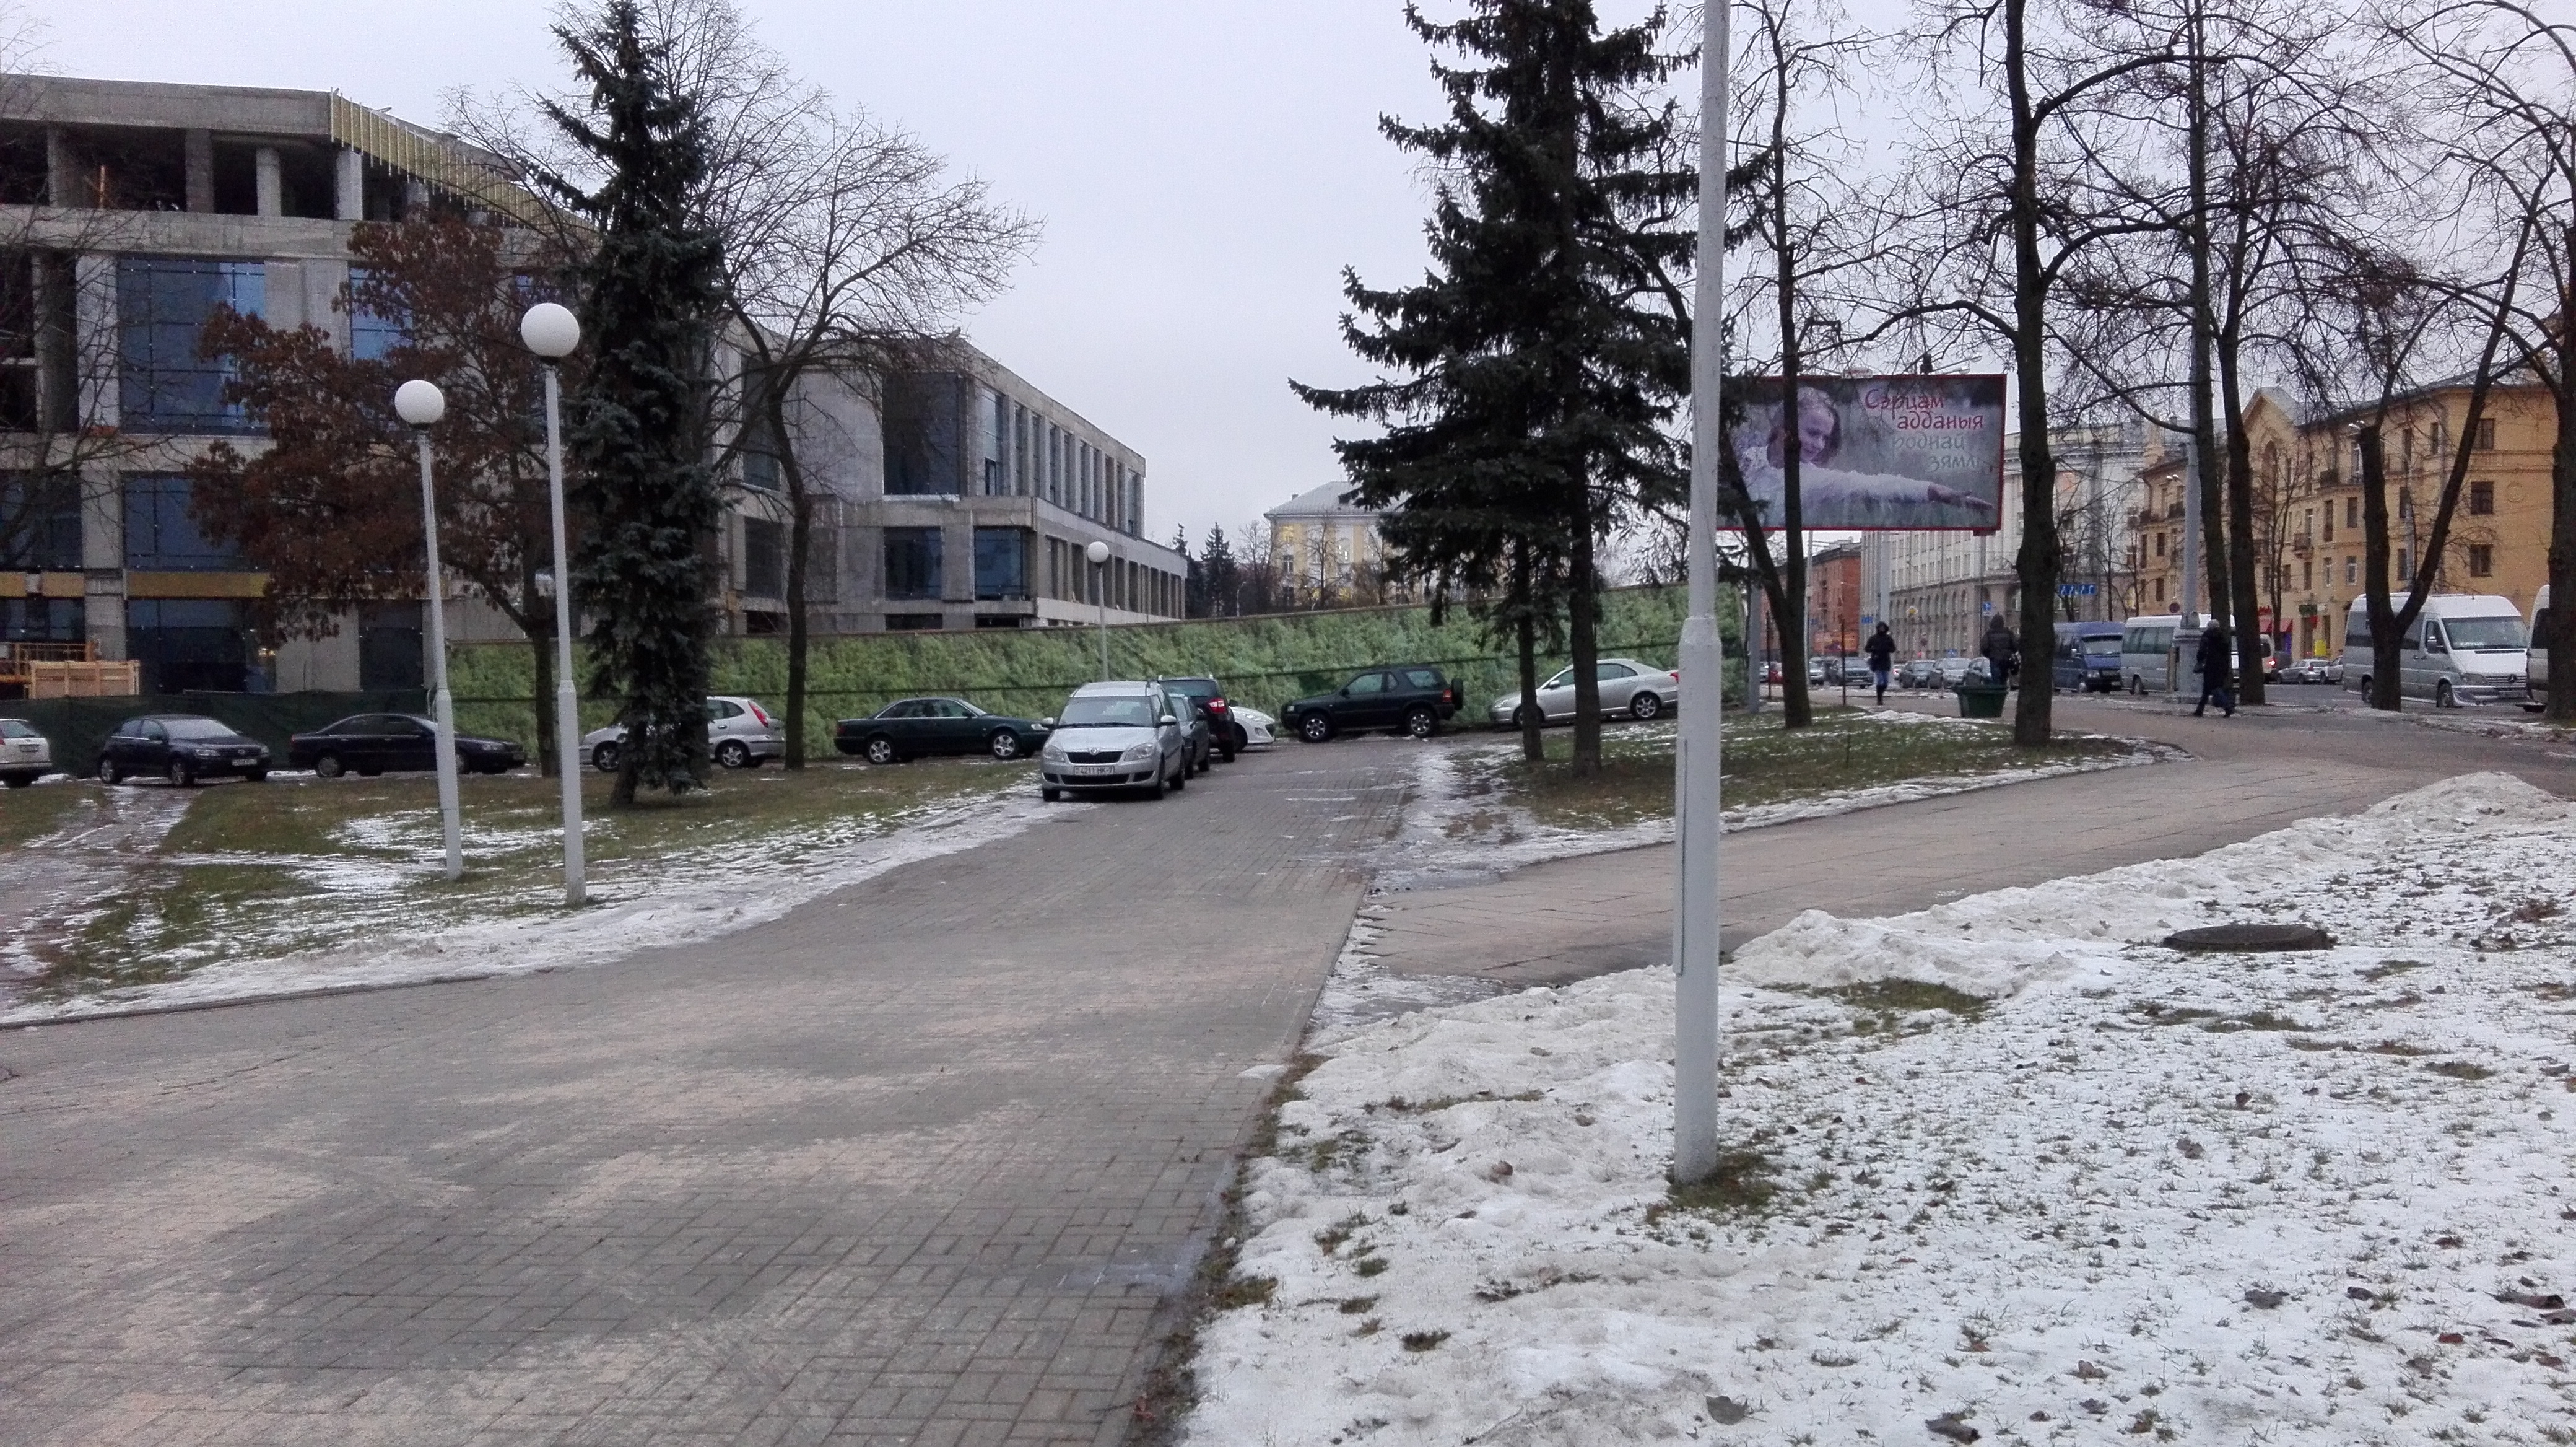 Можно ли победить “паркунов” в Минске? Противостояние у здания МАРТ и Минспорта